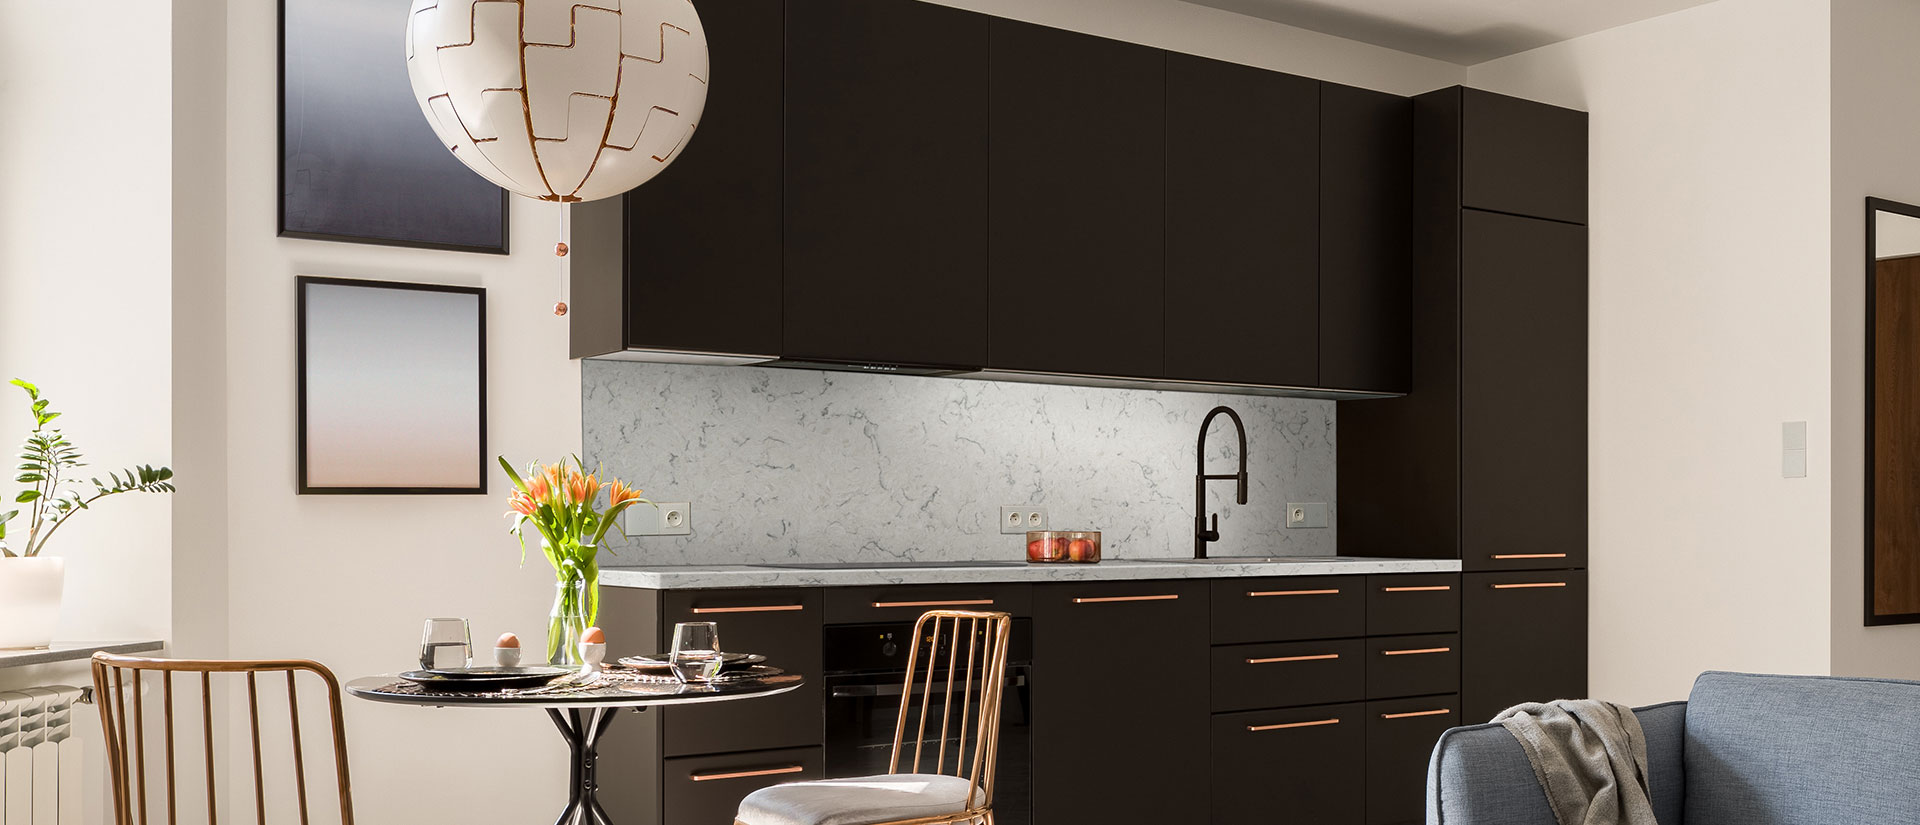 Carrara Mist Quartz countertop in a sleek and elegant kitchen